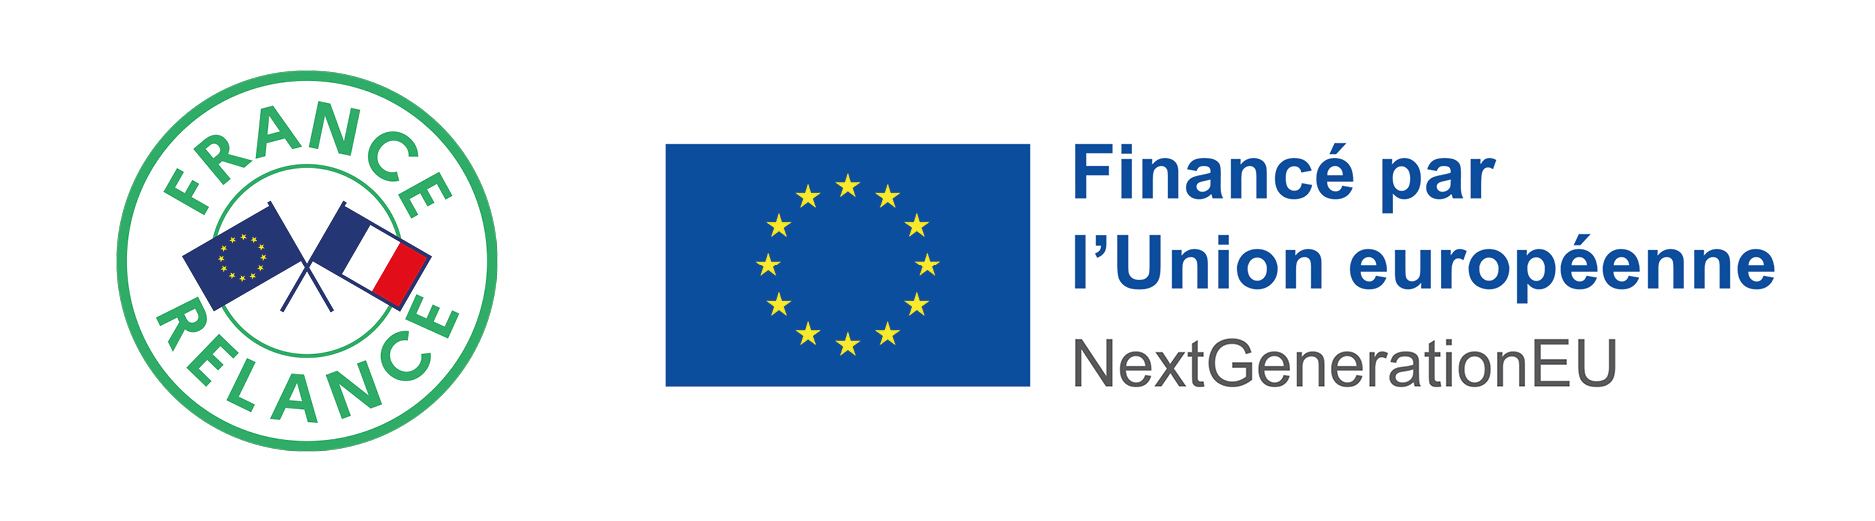 Cofinancement apporté par France Relance et par l’Union Européenne dans le cadre du plan NextGenerationEU